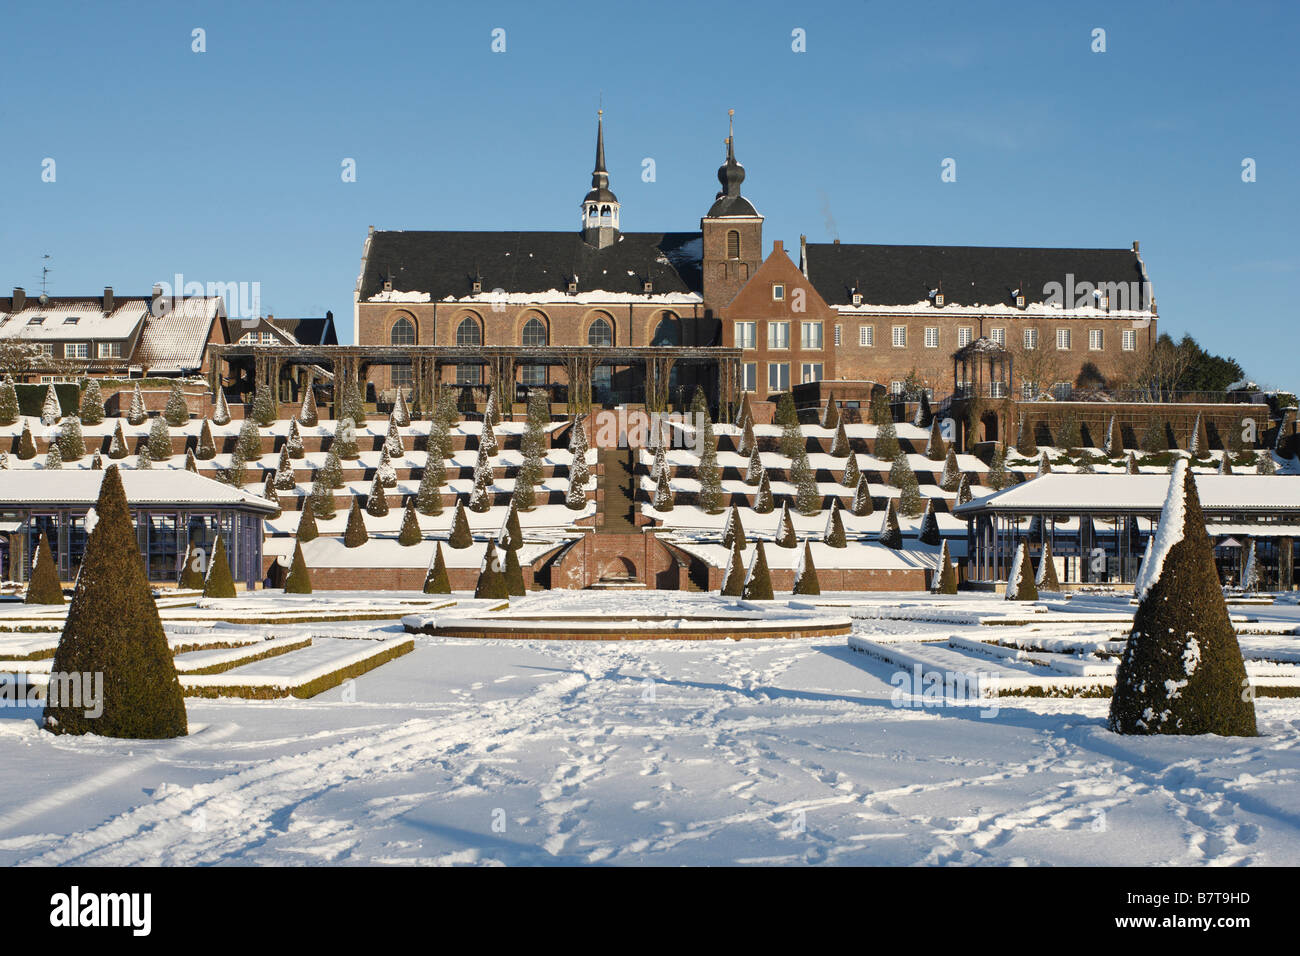 Kamp-Lintfort, Kloster Kamp im Schnee, Terrassengarten, Blick von Süden auf die Terrassen und das Kloster Stock Photo